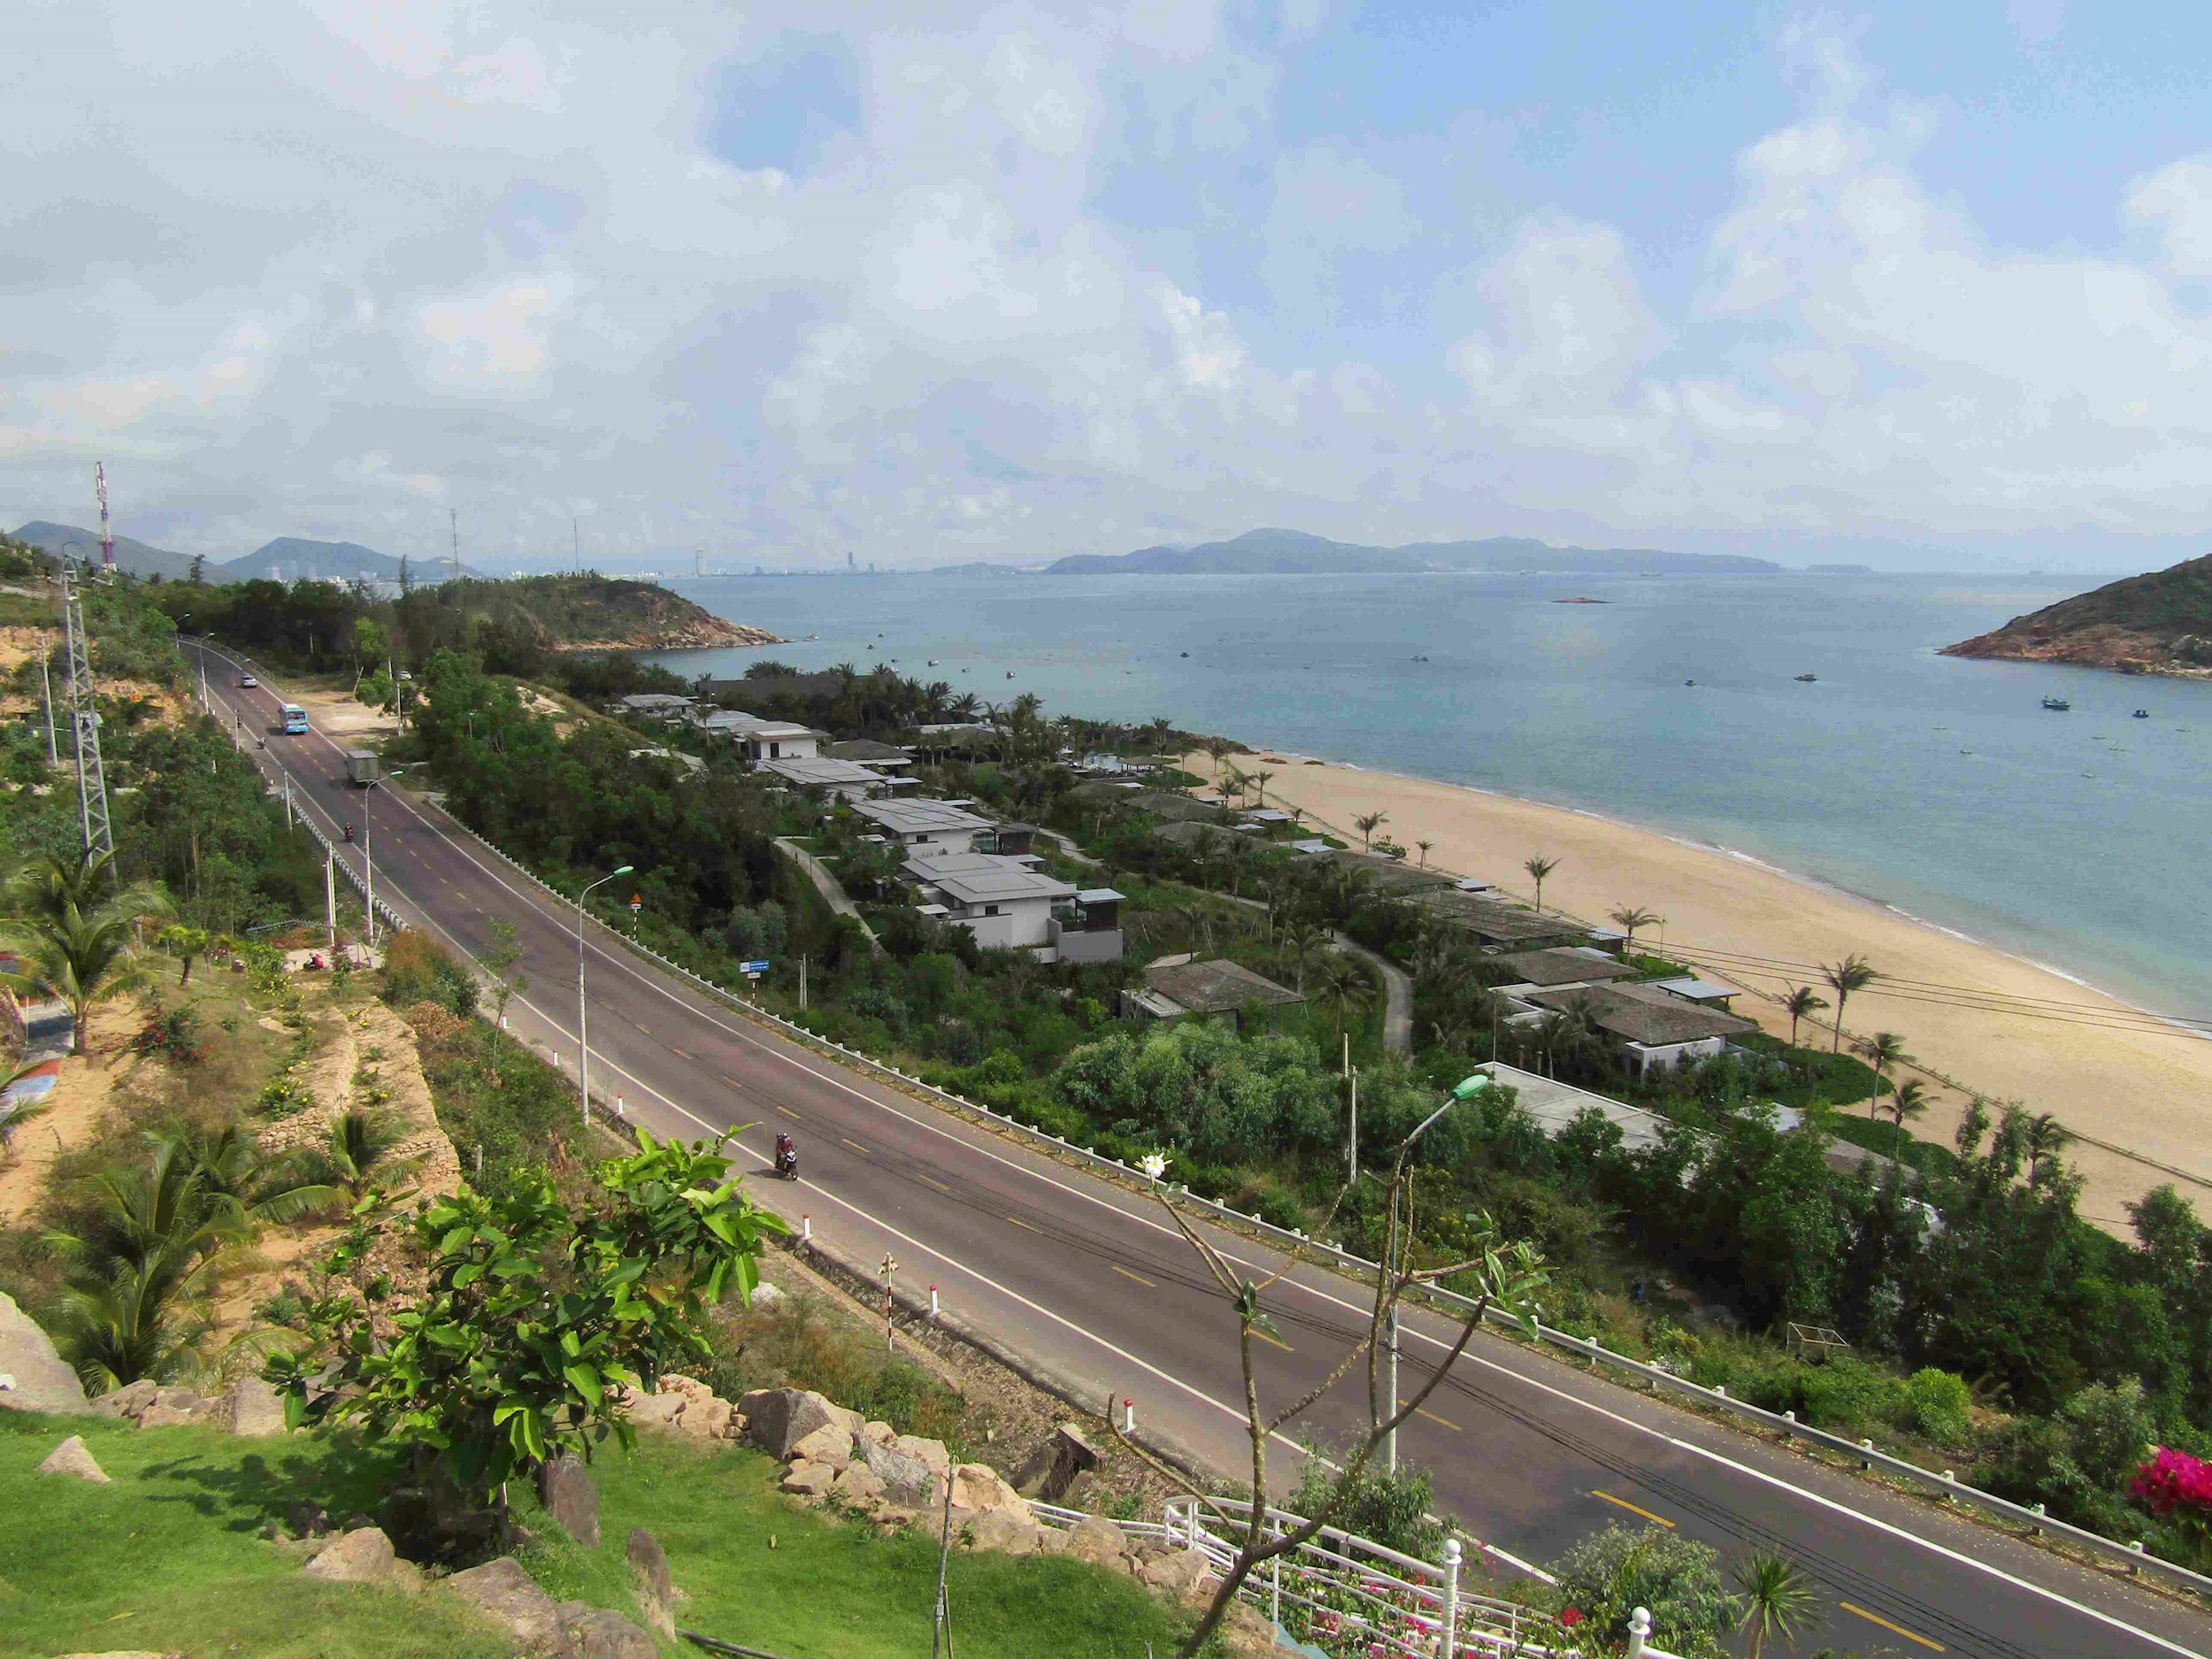 Tuyến đường Quy Nhơn - Sông Cầu được đánh giá là một trong những tuyến đường ven biển đẹp nhất Việt Nam. Dọc tuyến có 19 Dự án du lịch, nghỉ dưỡng đã và đang xây dựng lấp kín toàn bộ không gian ven biển.